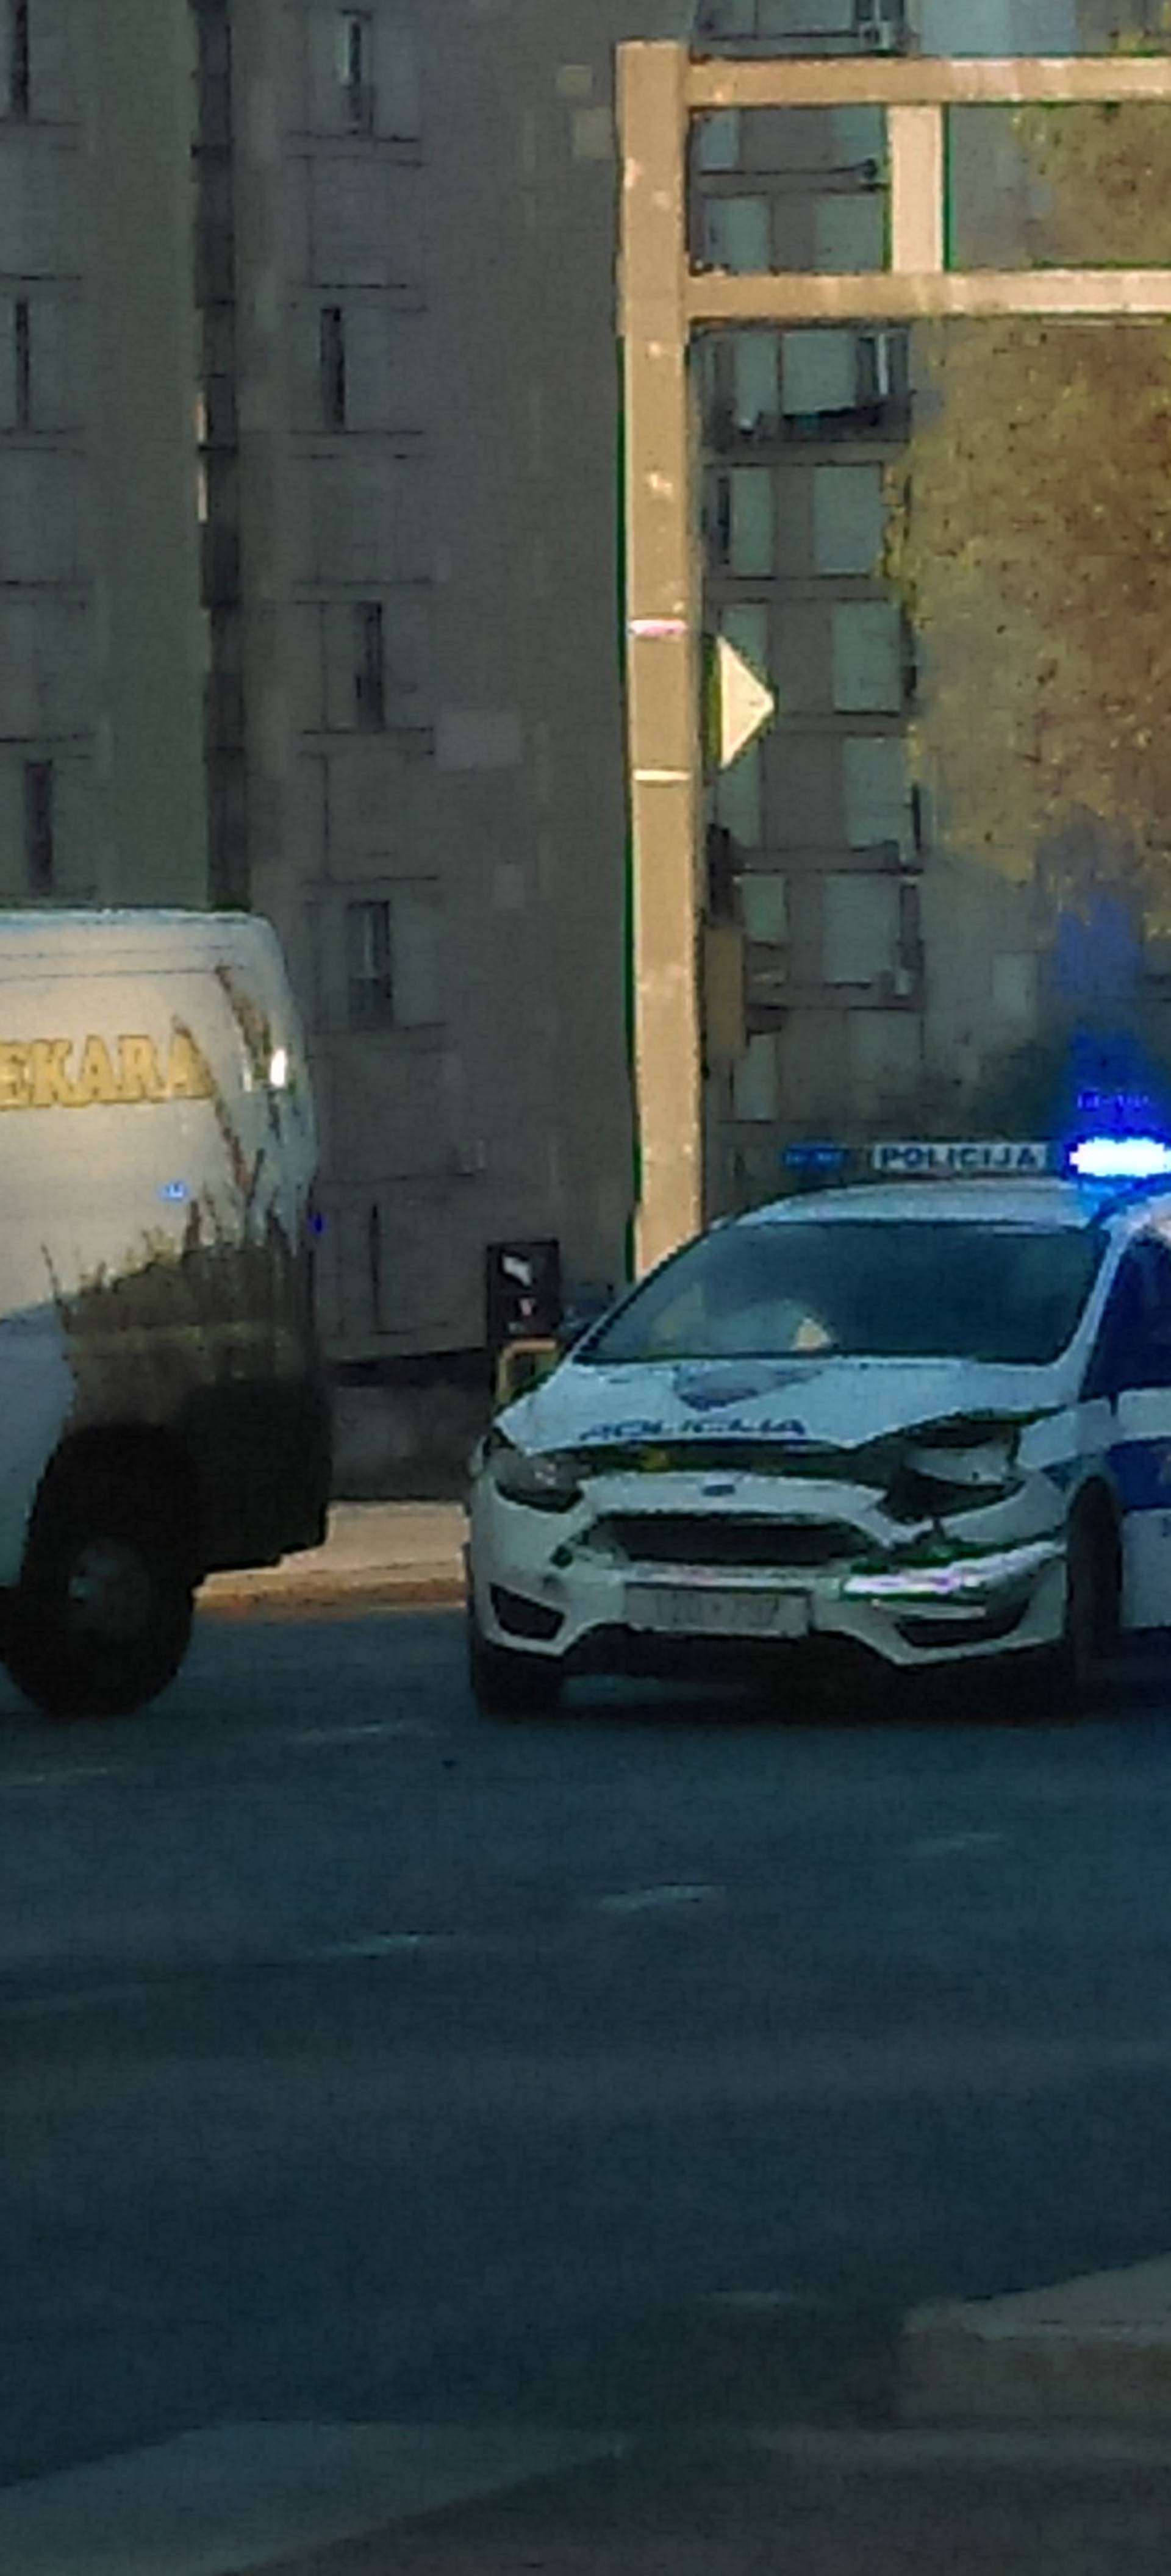 Policajci ozlijeđeni u nesreći u Splitu: Traže svjedoke sudara